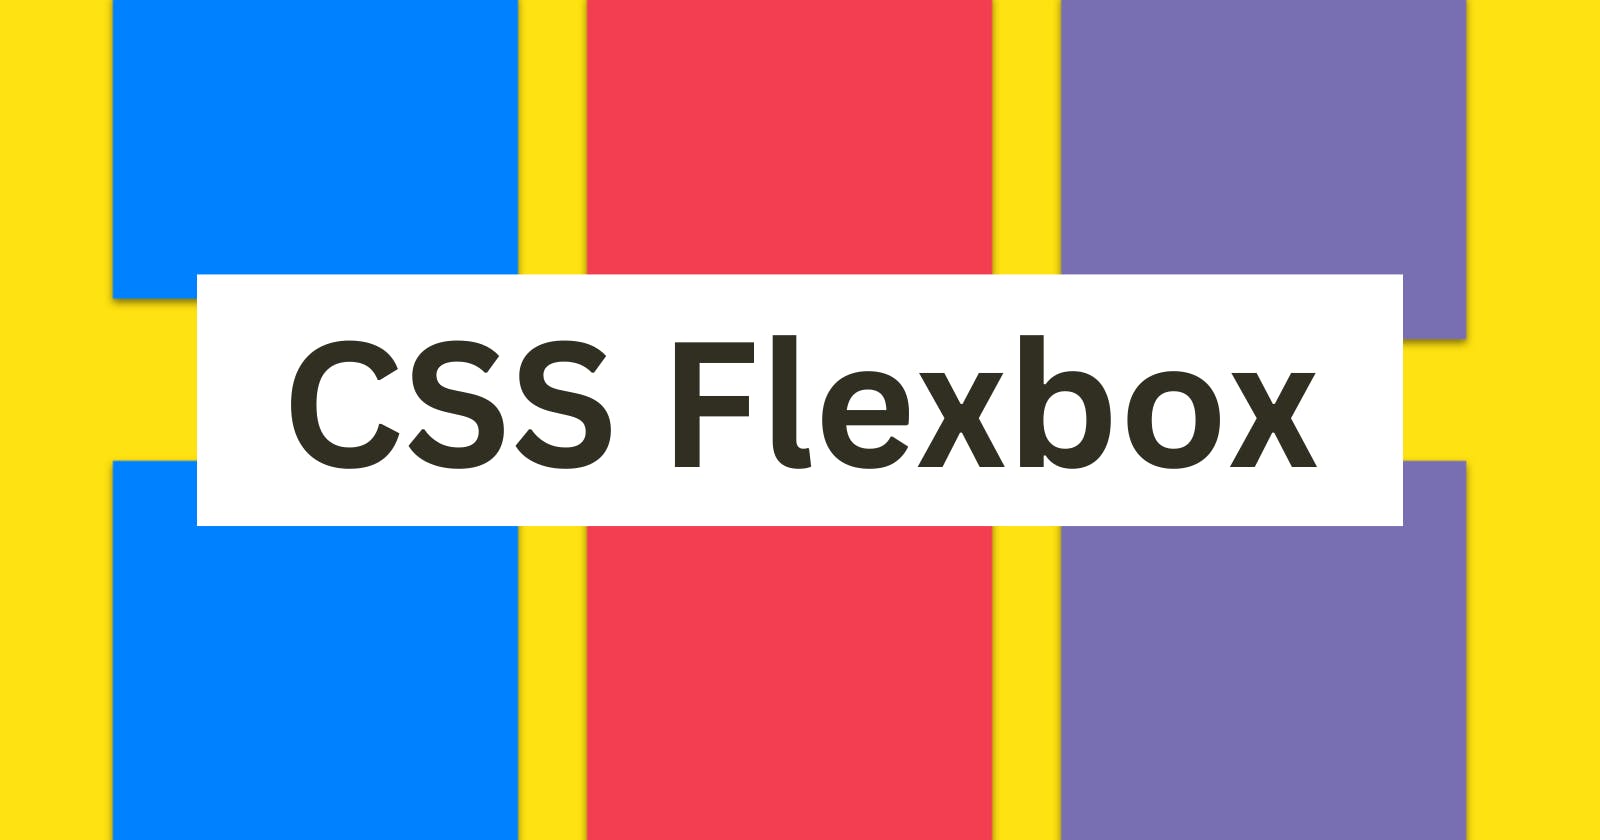 CSS Flexbox: A Beginner's Guide